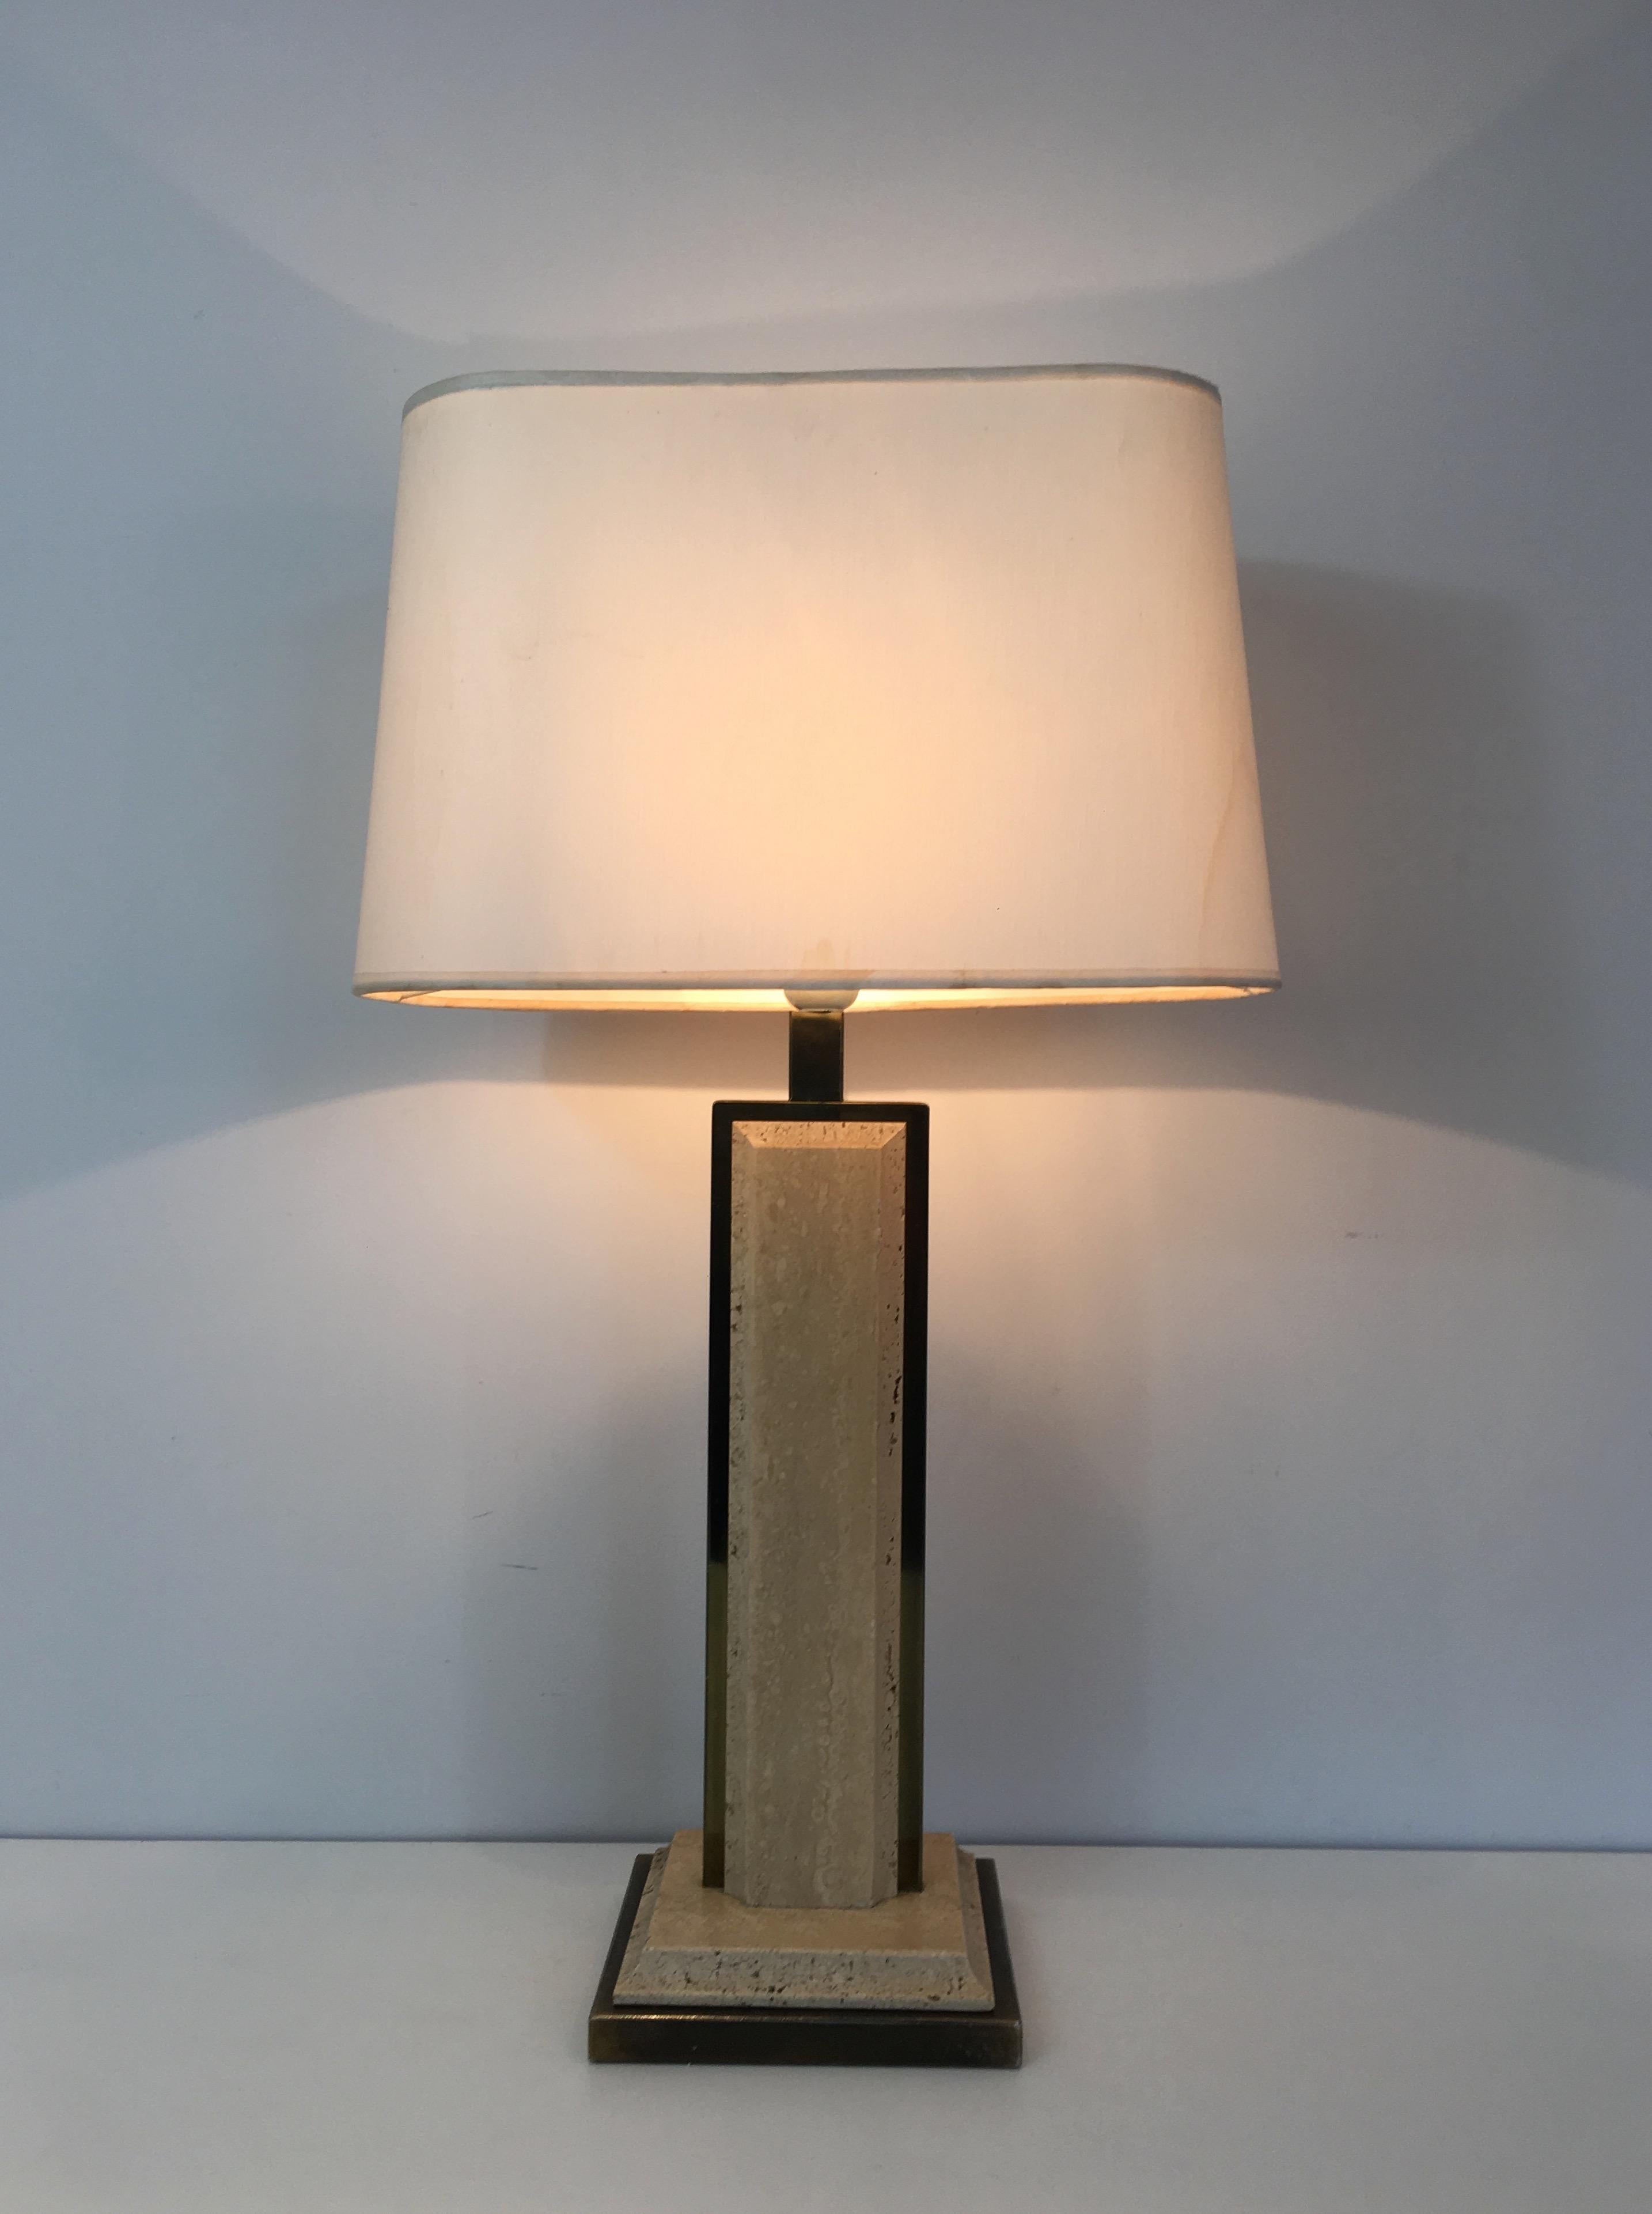 Cette très belle lampe de table est fabriquée en travertin et en métal doré. L'abat-jour est d'origine et un peu taché, la lampe est donc vendue avec un nouvel abat-jour personnalisé de la couleur de votre choix. Il s'agit d'un ouvrage français.